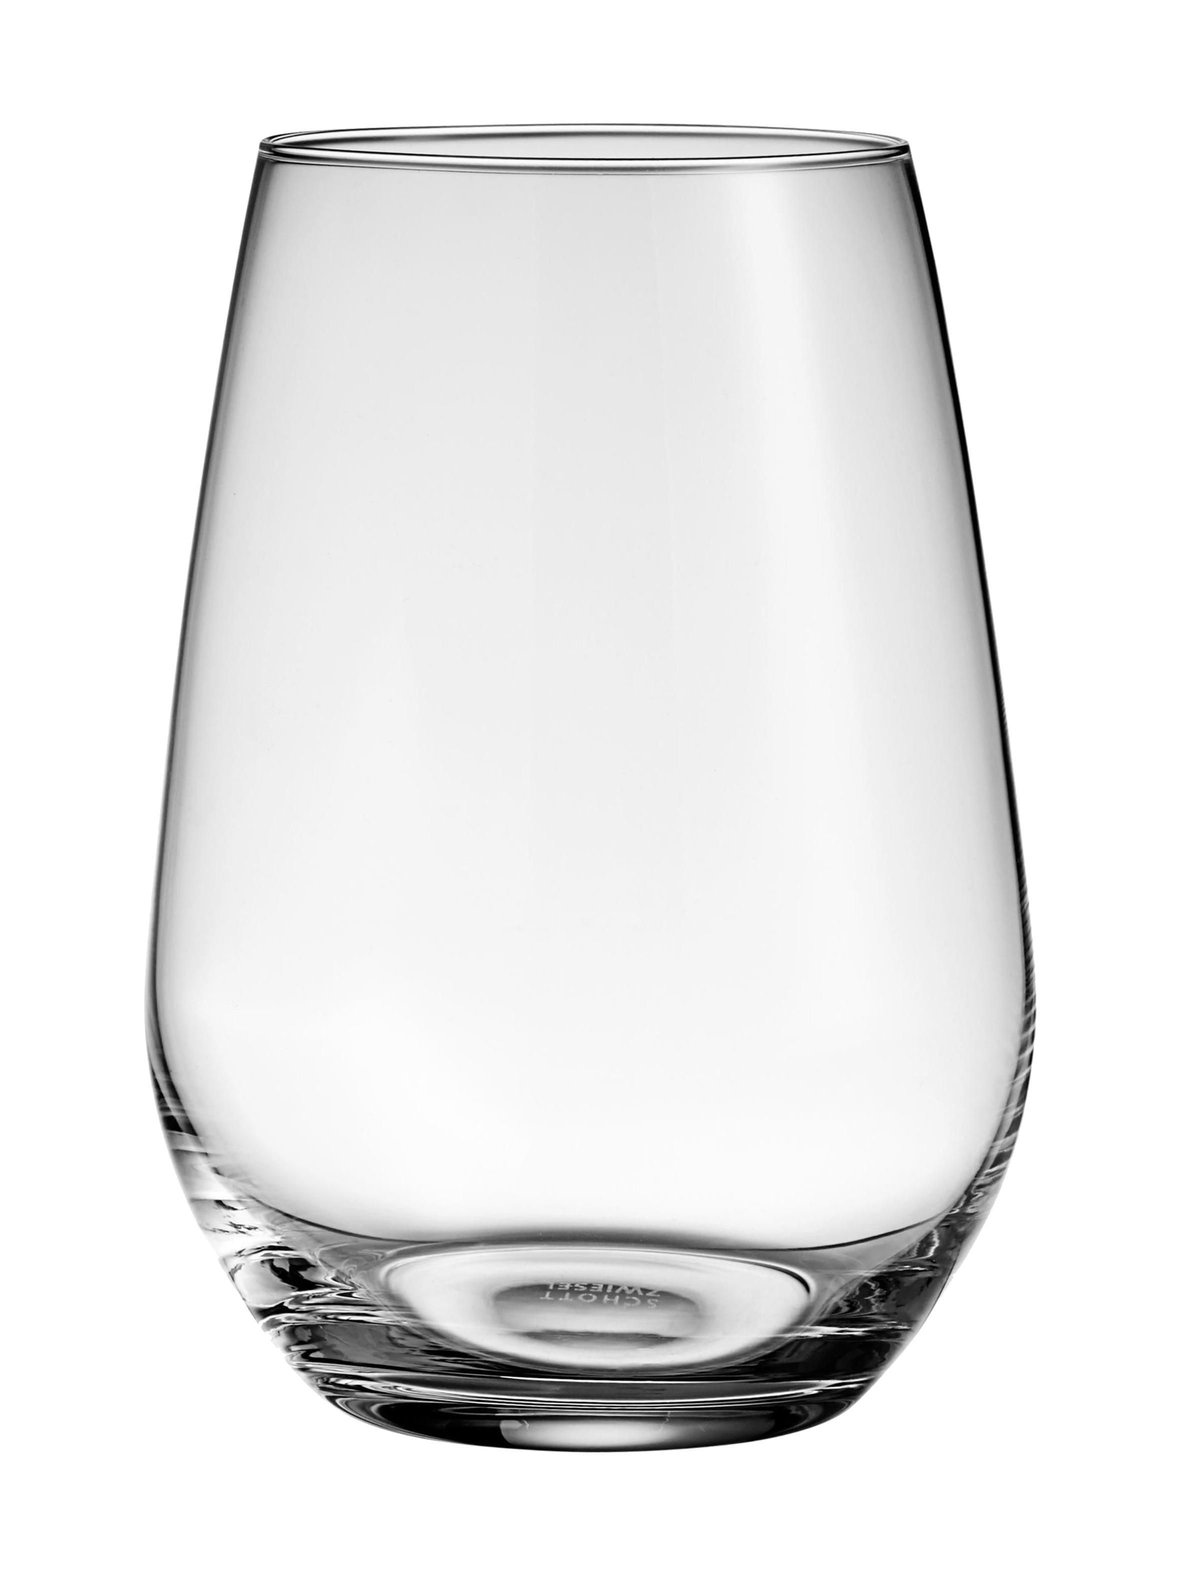 Vina-lasi 556 ml, Schott Zwiesel